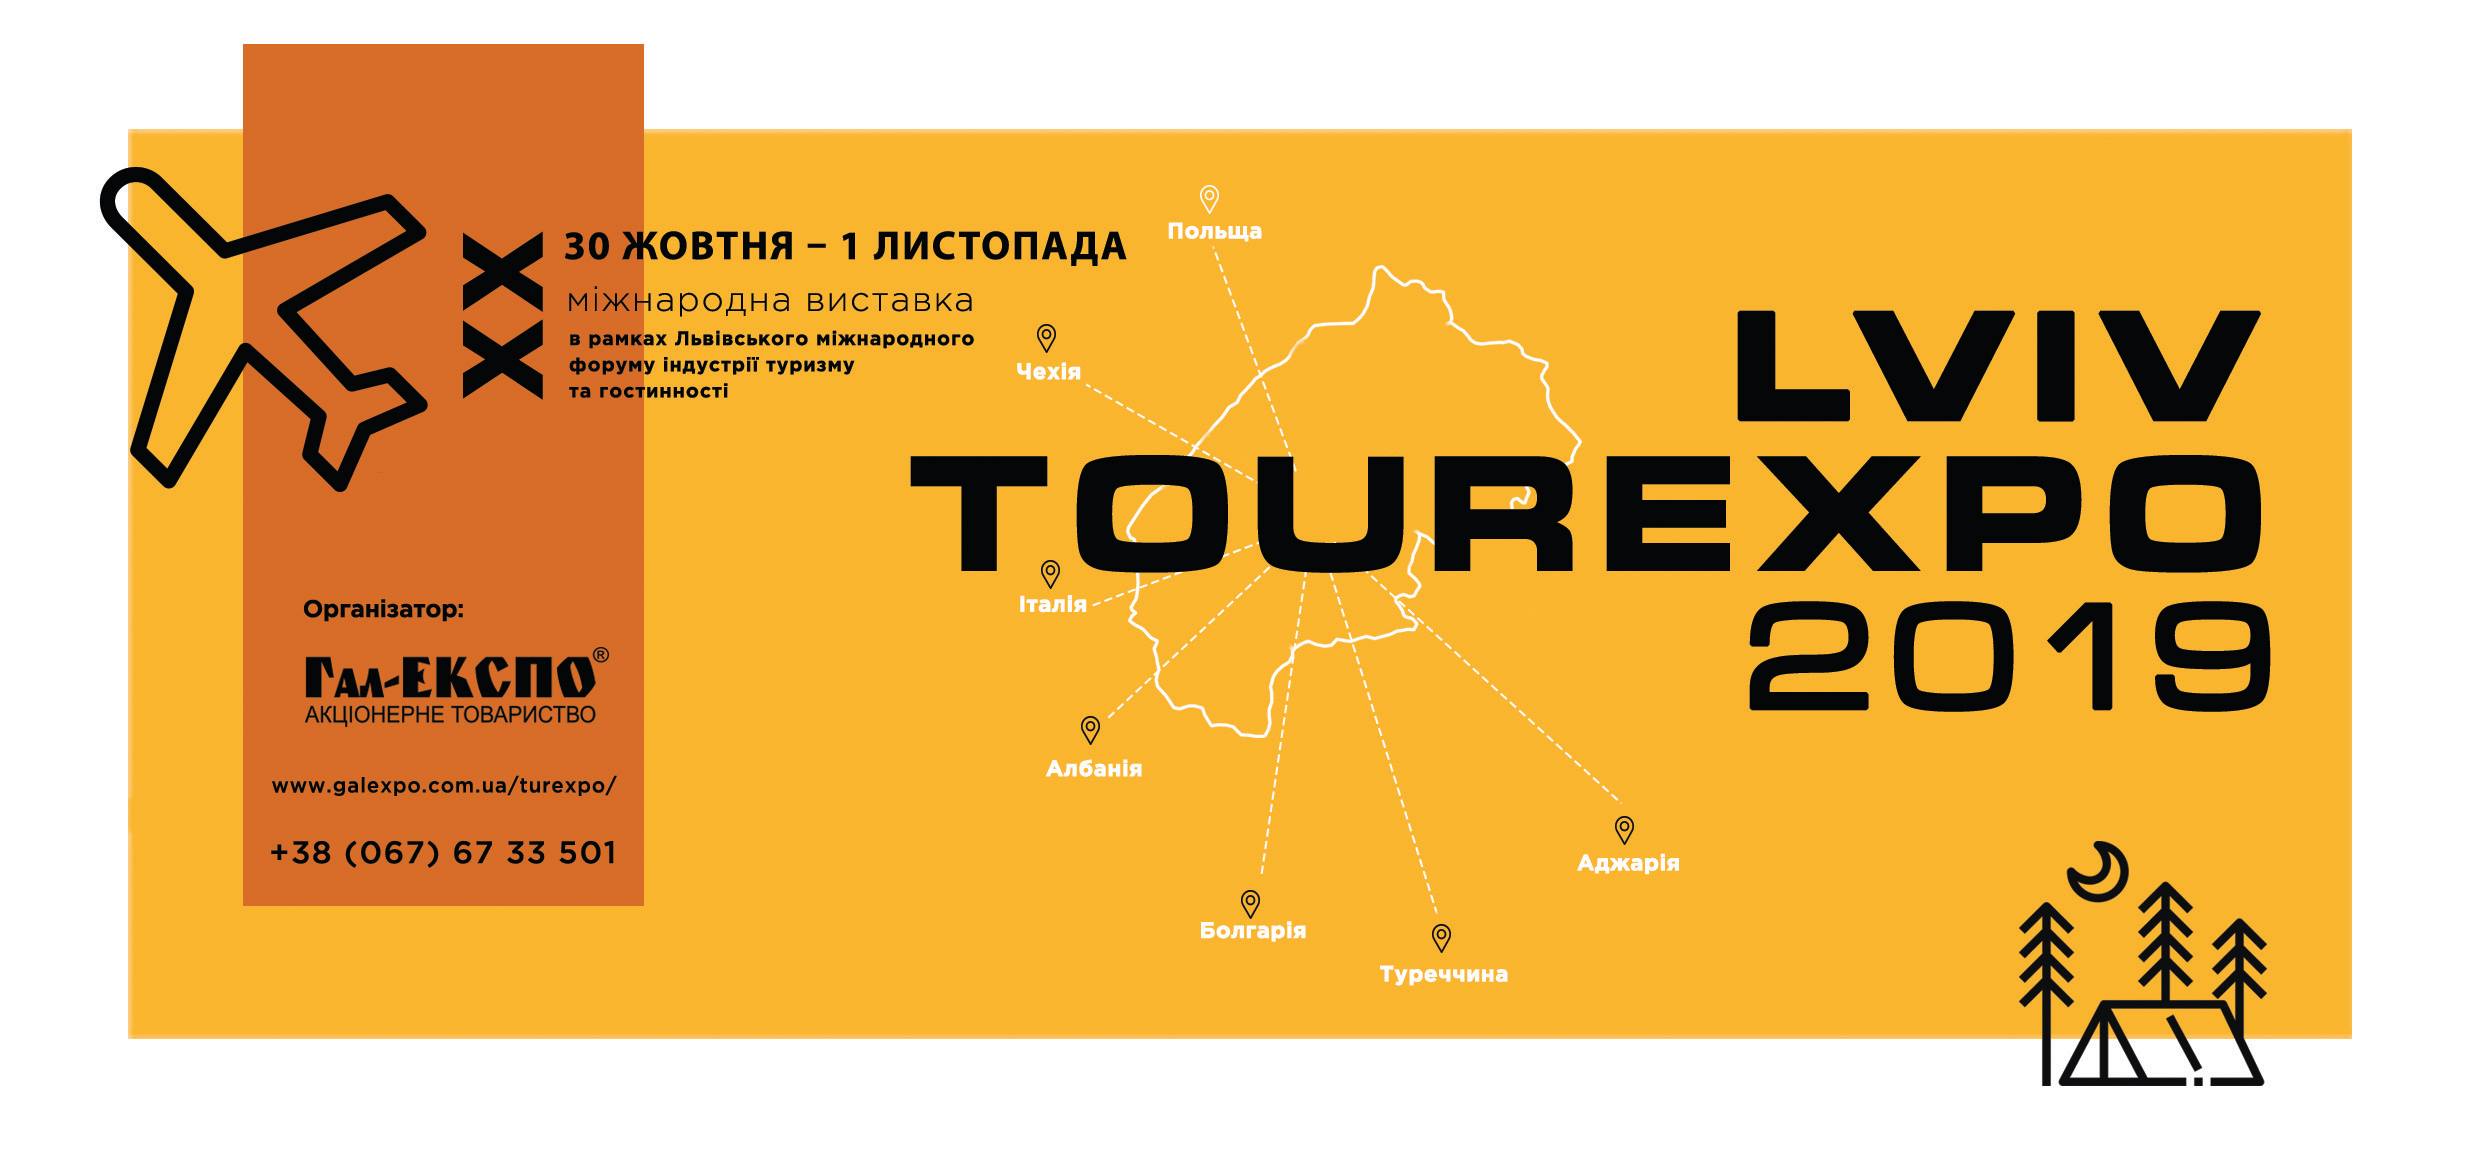 «ТурЕКСПО-2019»  запрошує  усіх зацікавлених осіб до Львова